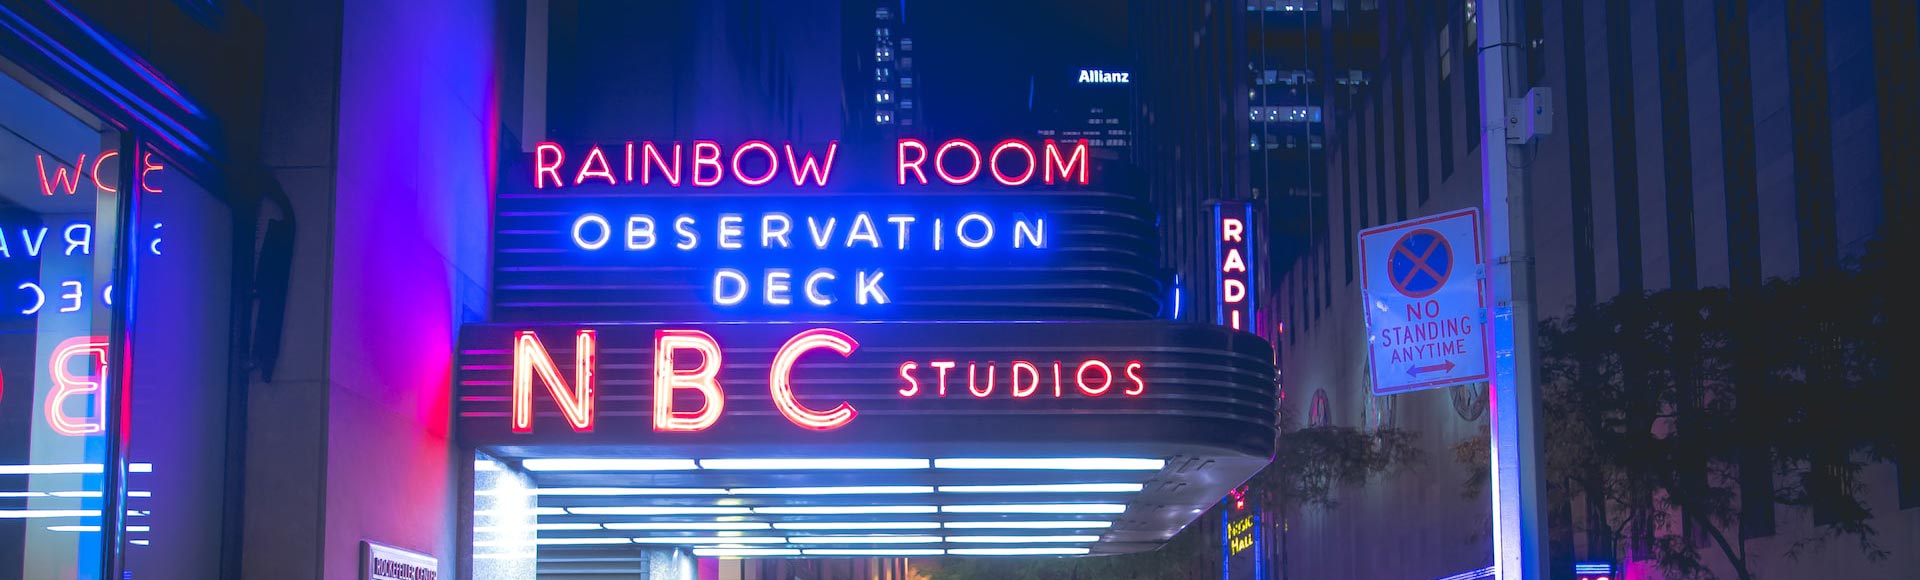 שלט ניאון של מרפסת התצפית של NBC בלילה